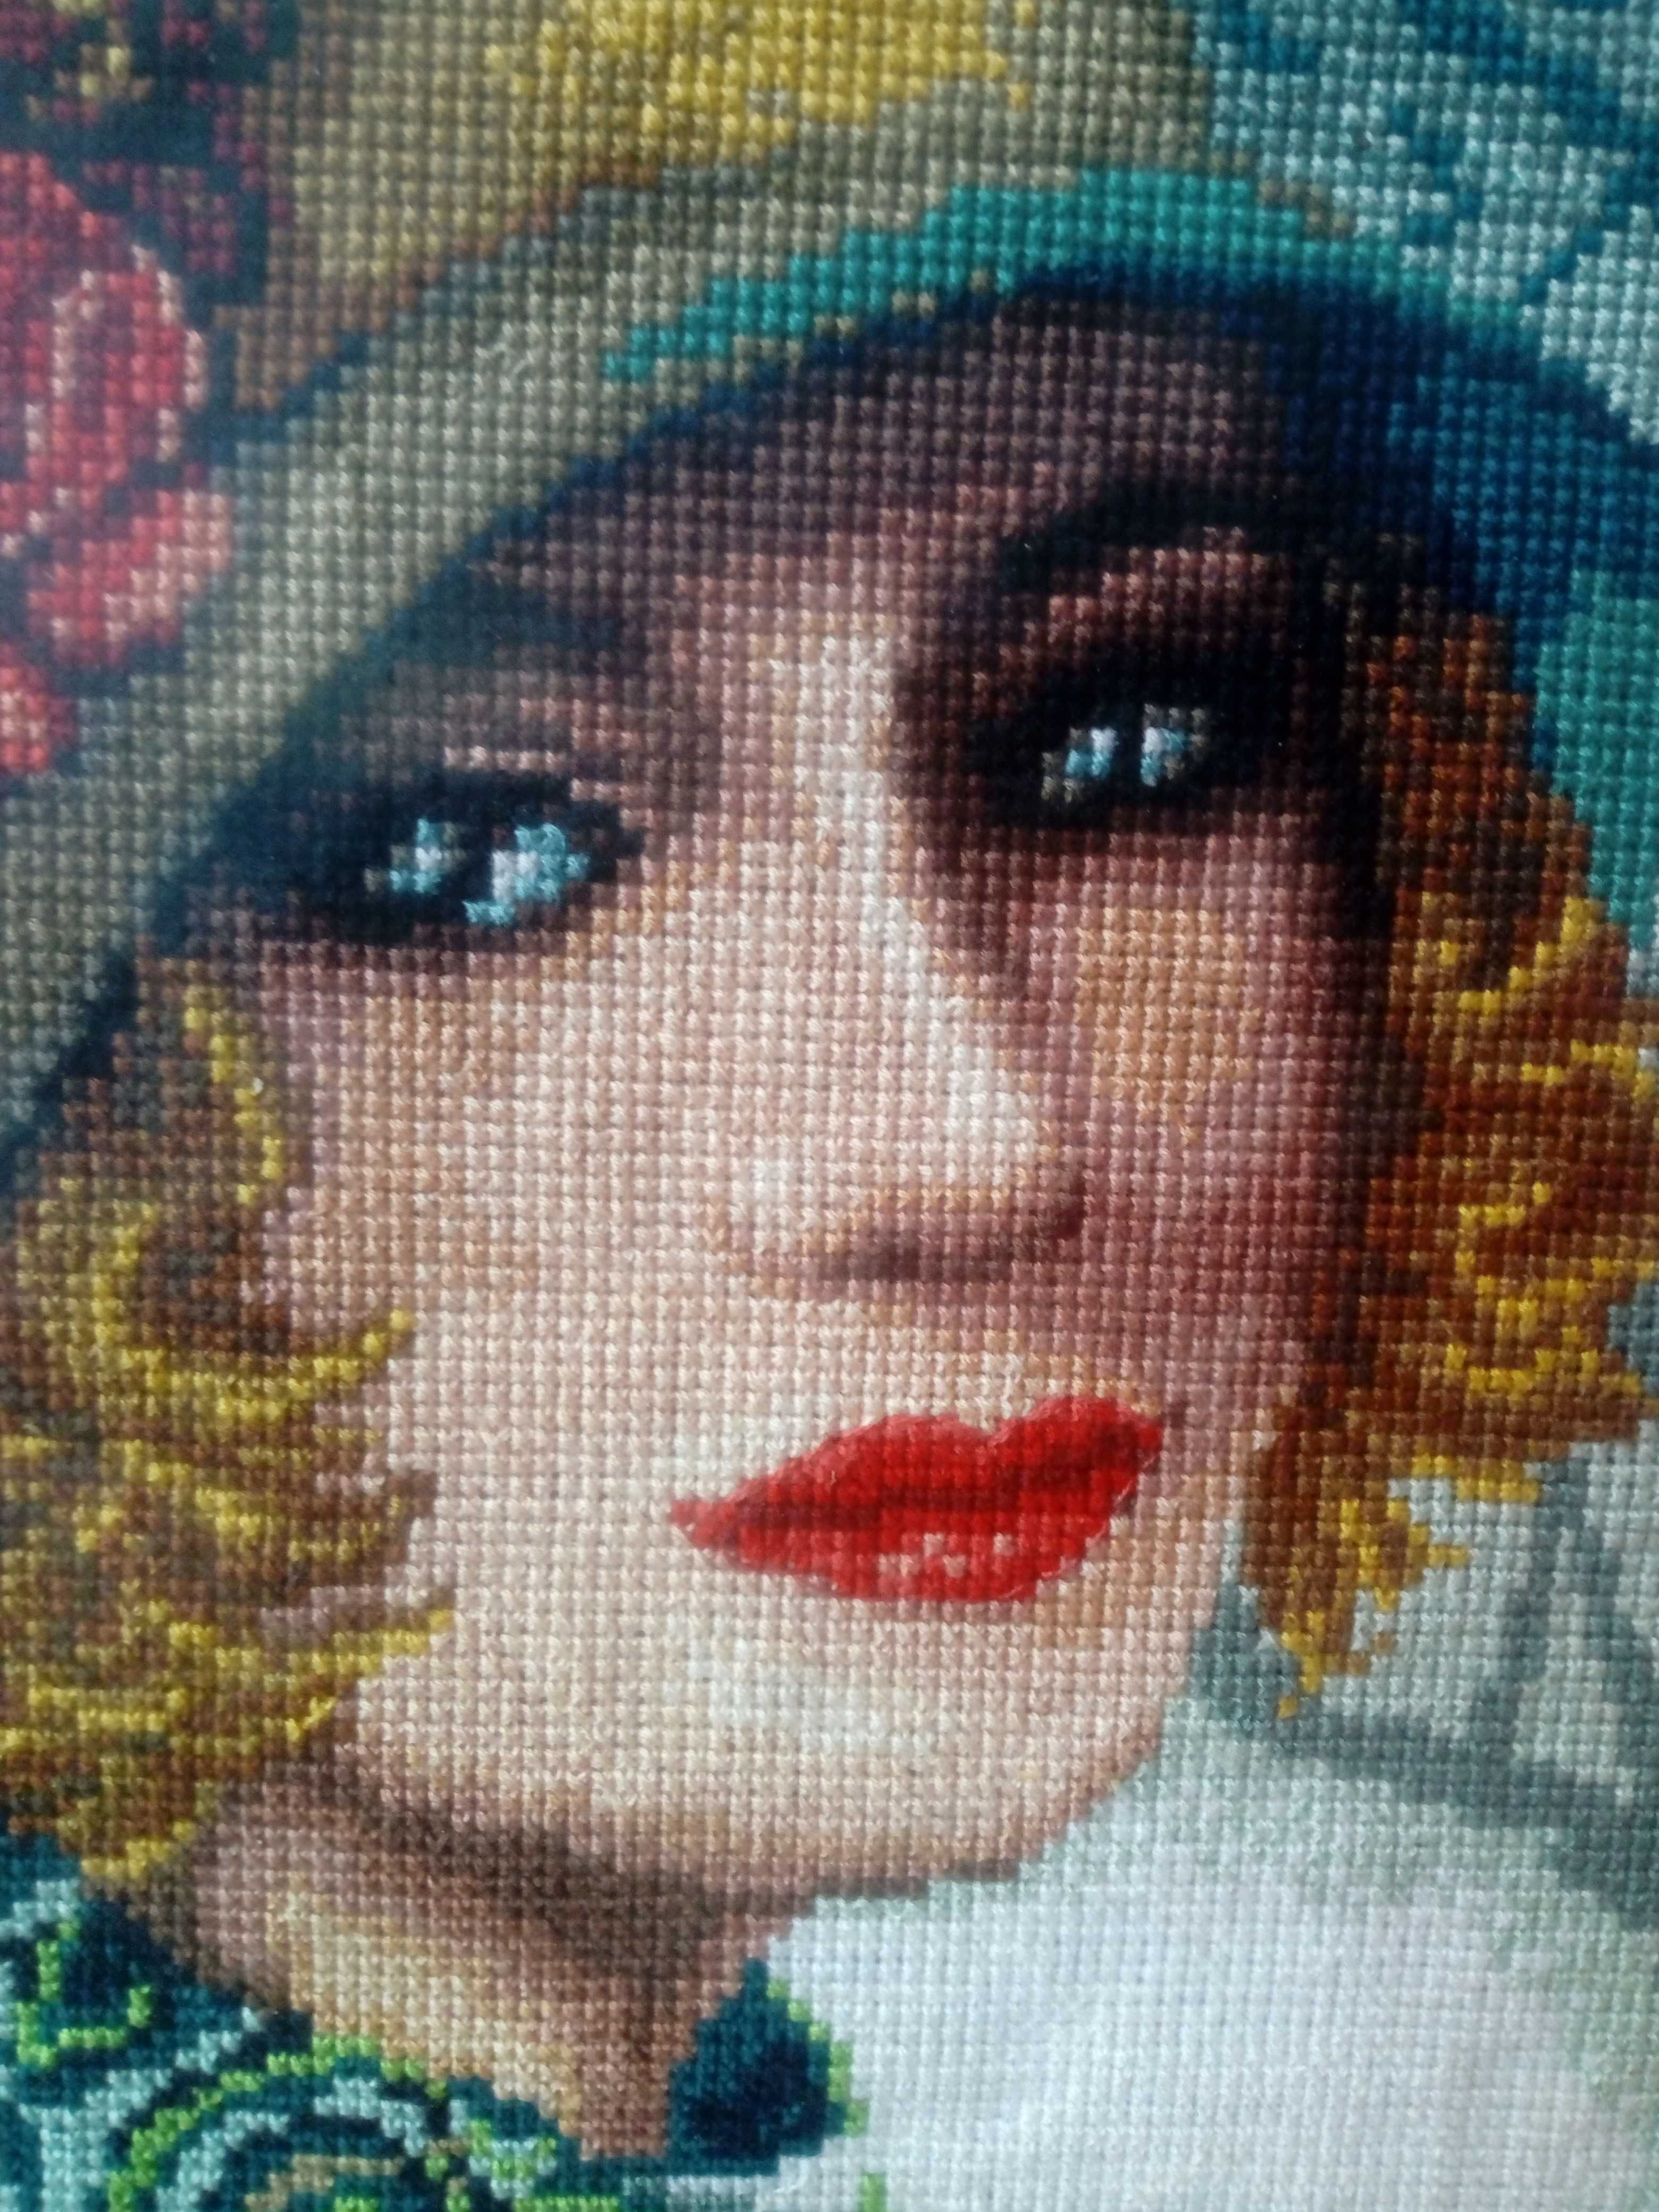 Dama w kapeluszu- haftowany obraz